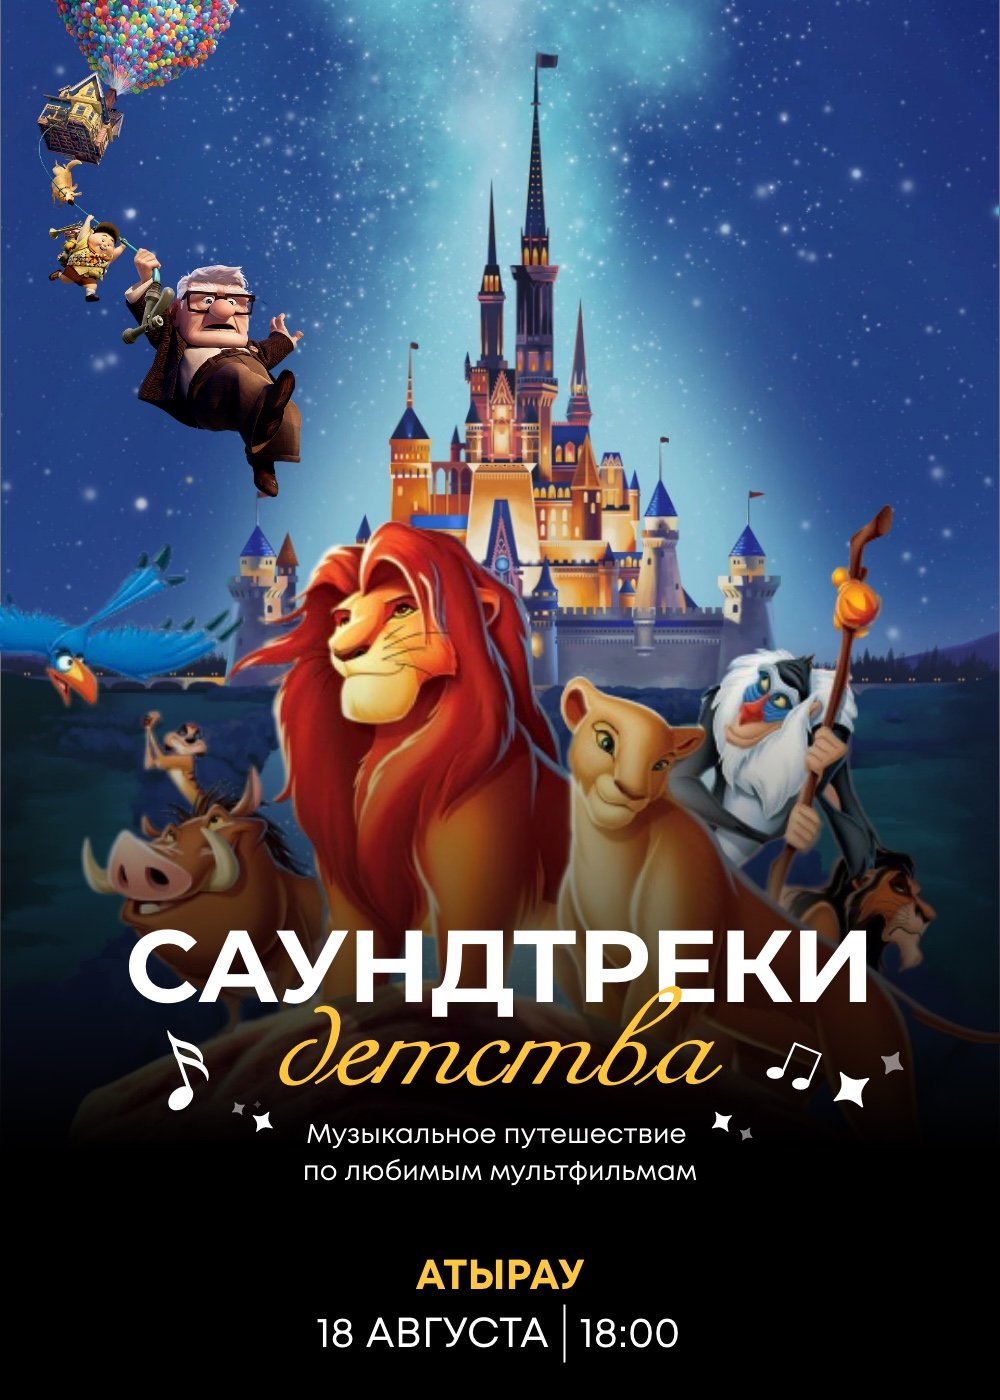 «Disney music world» Tynda Music in Atyrau